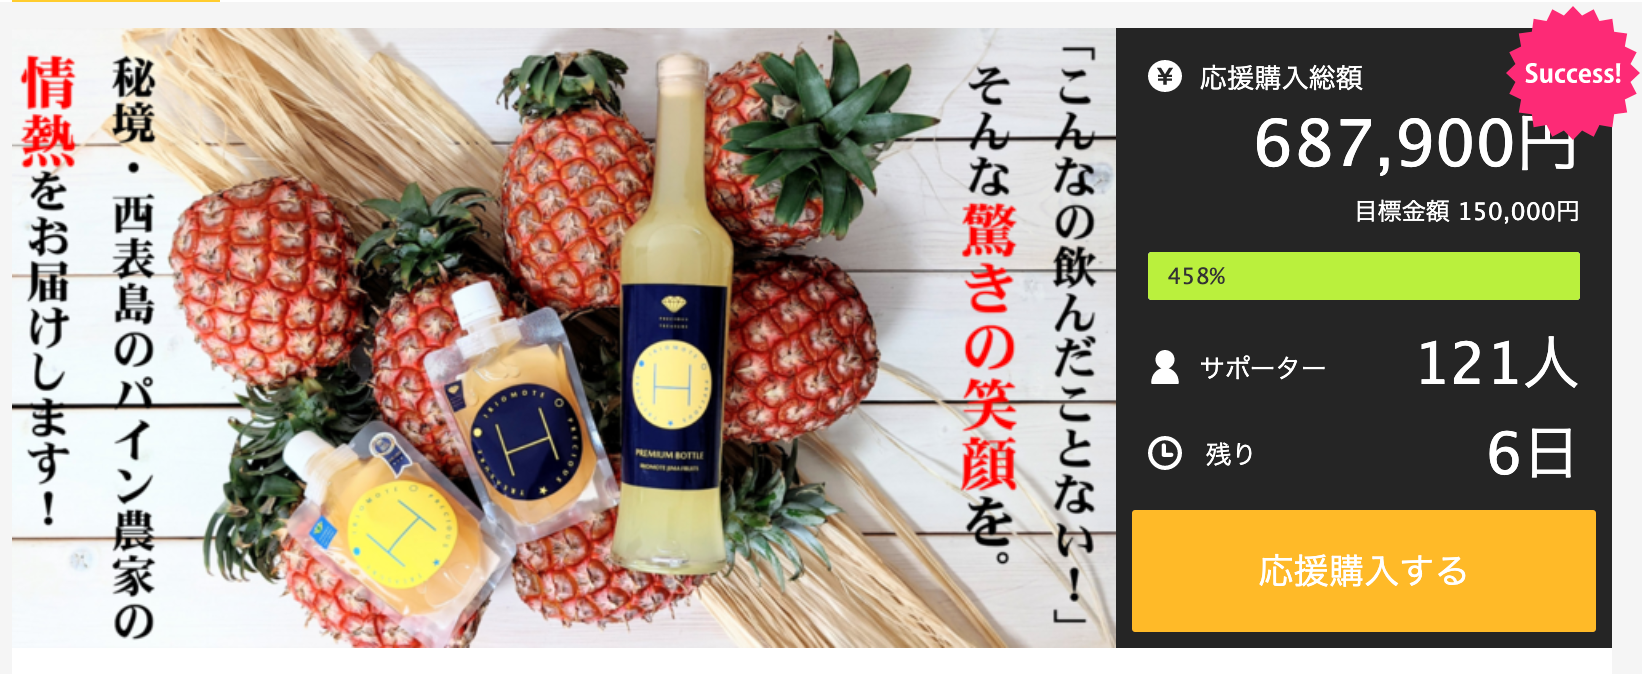 日本初上陸　
0糖類・0脂肪・0カロリー、健康と美味しさを兼ね備えた
スパークリングウォーターが6月中旬より日本販売スタート